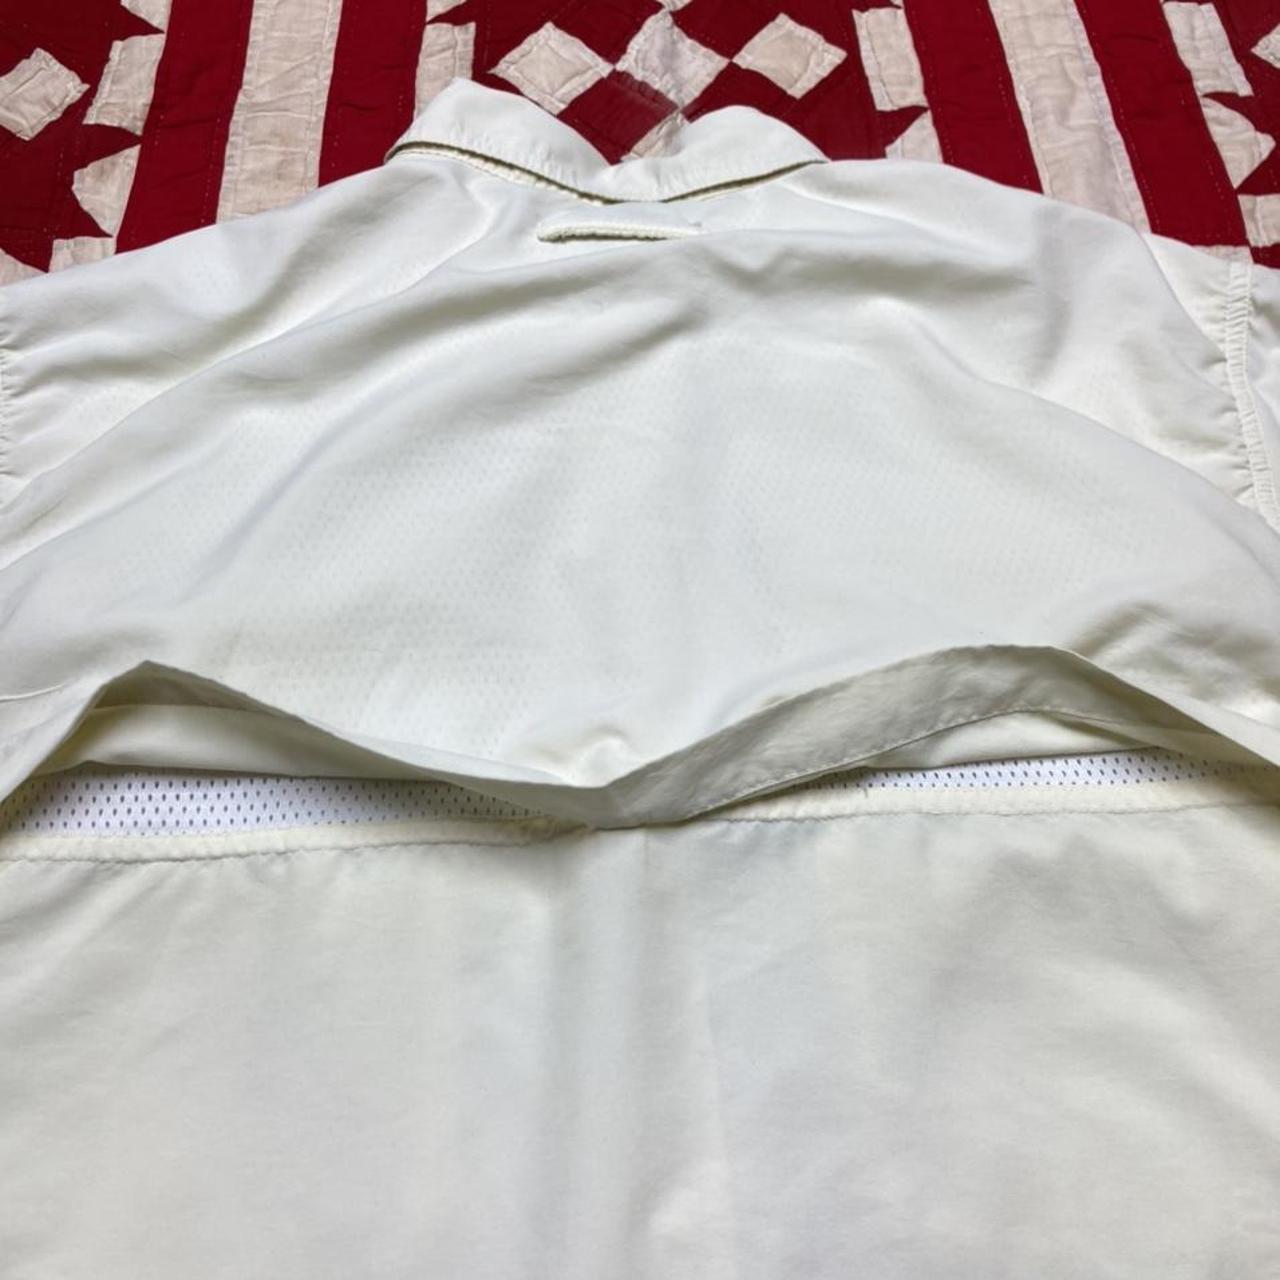 ExOfficio Men's Cream and White Shirt (7)